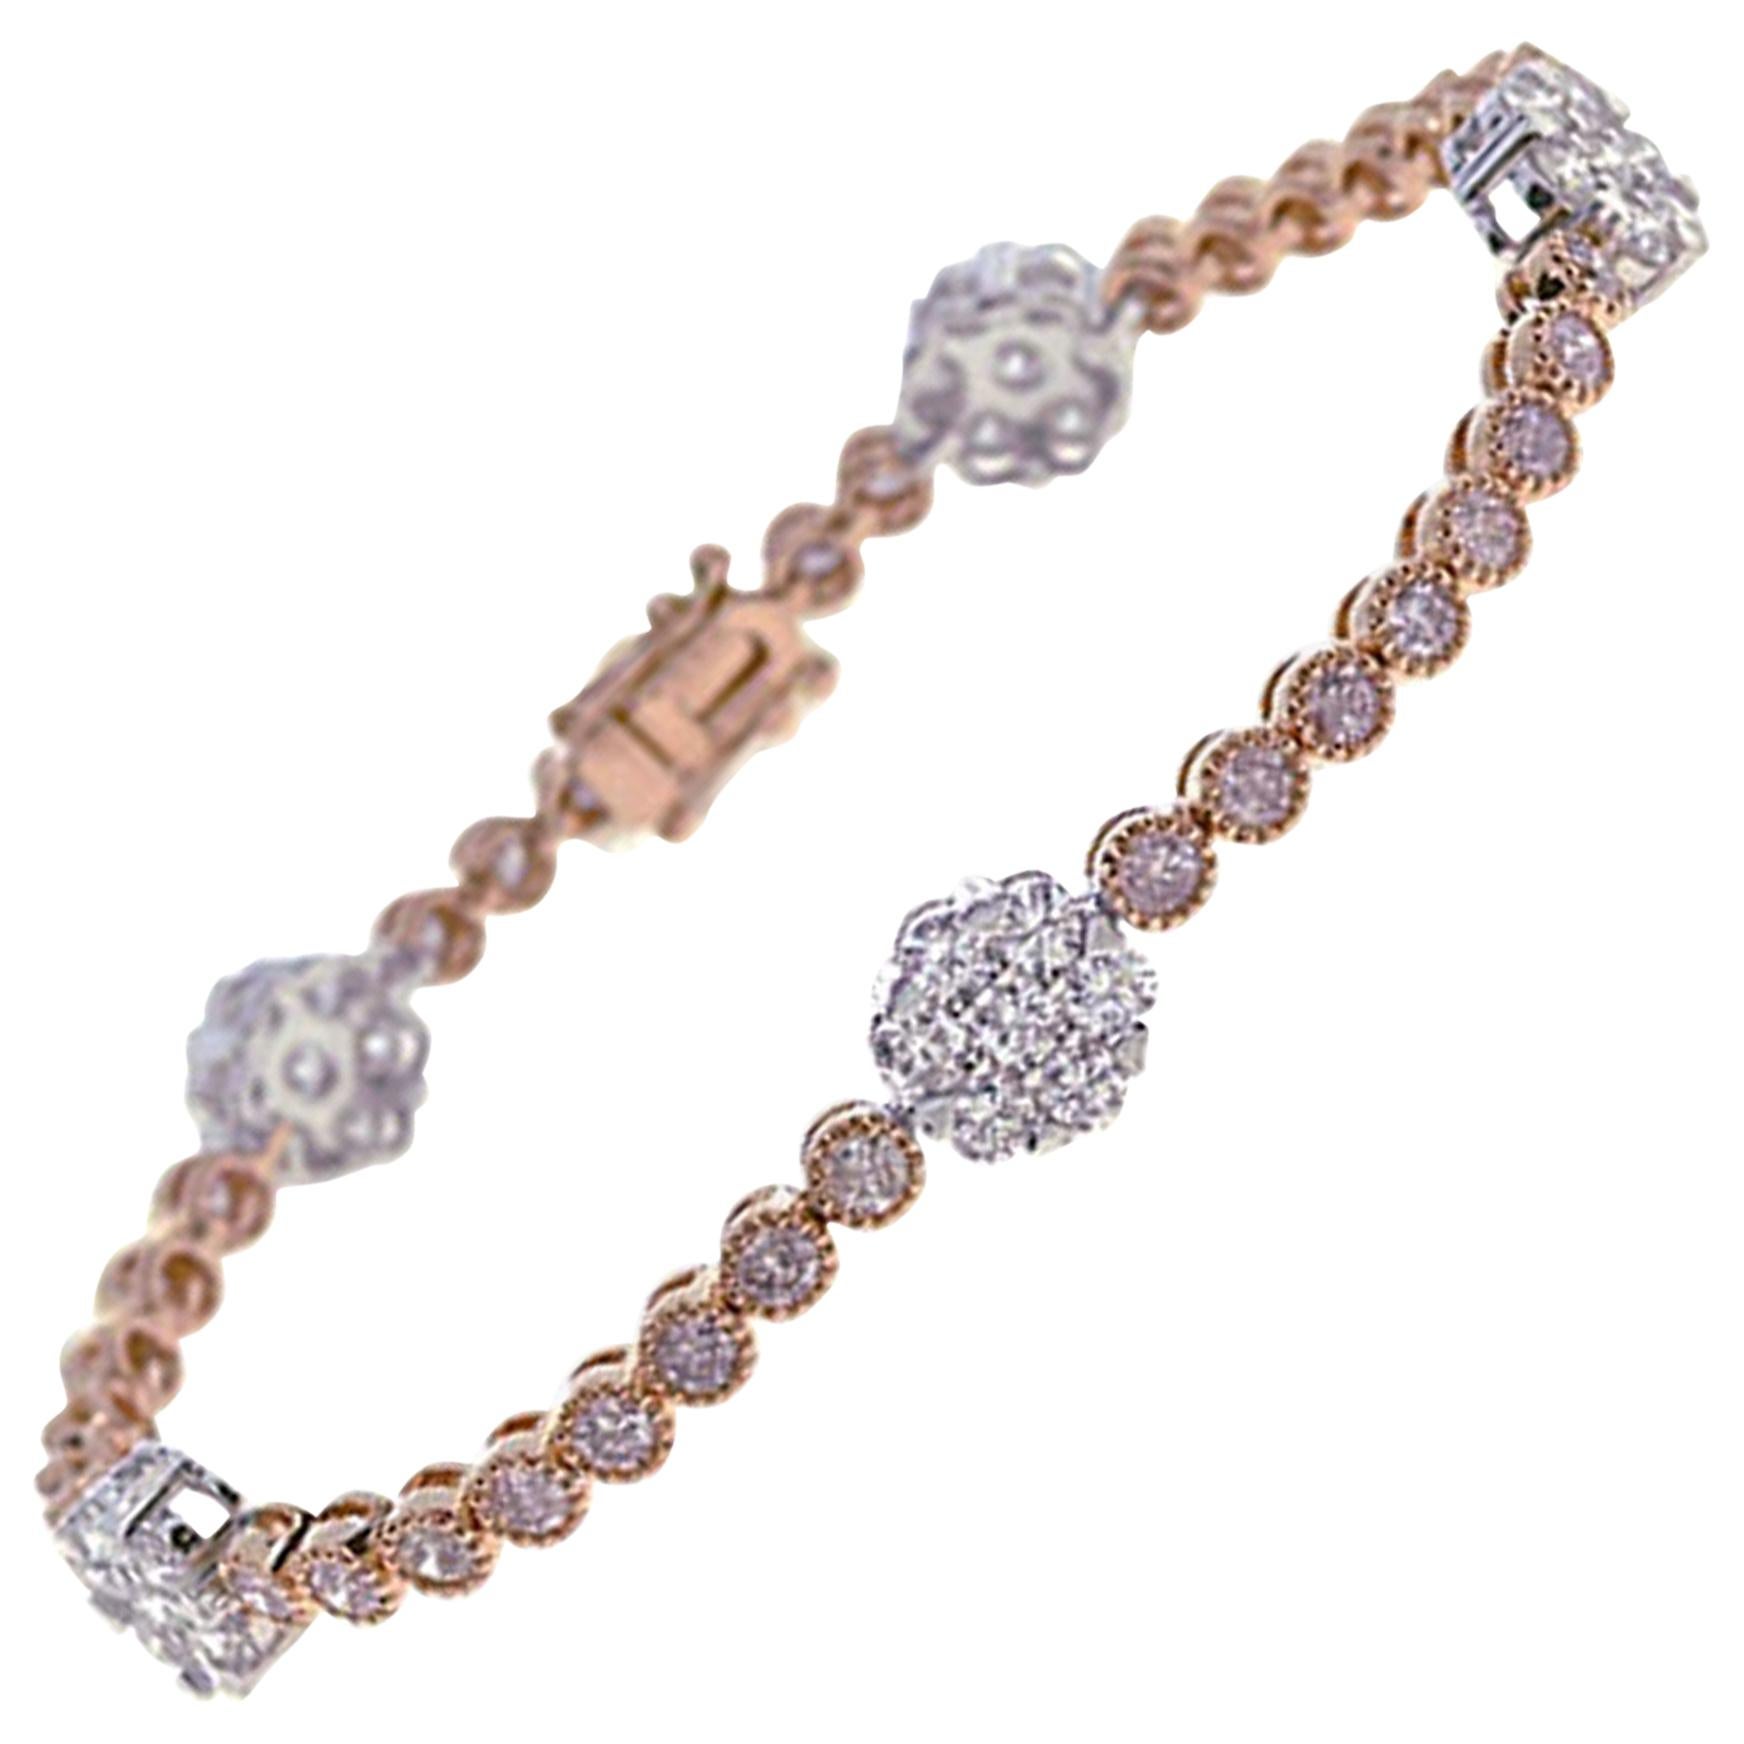 5.62 Carat Natural Pink Diamond Bracelet